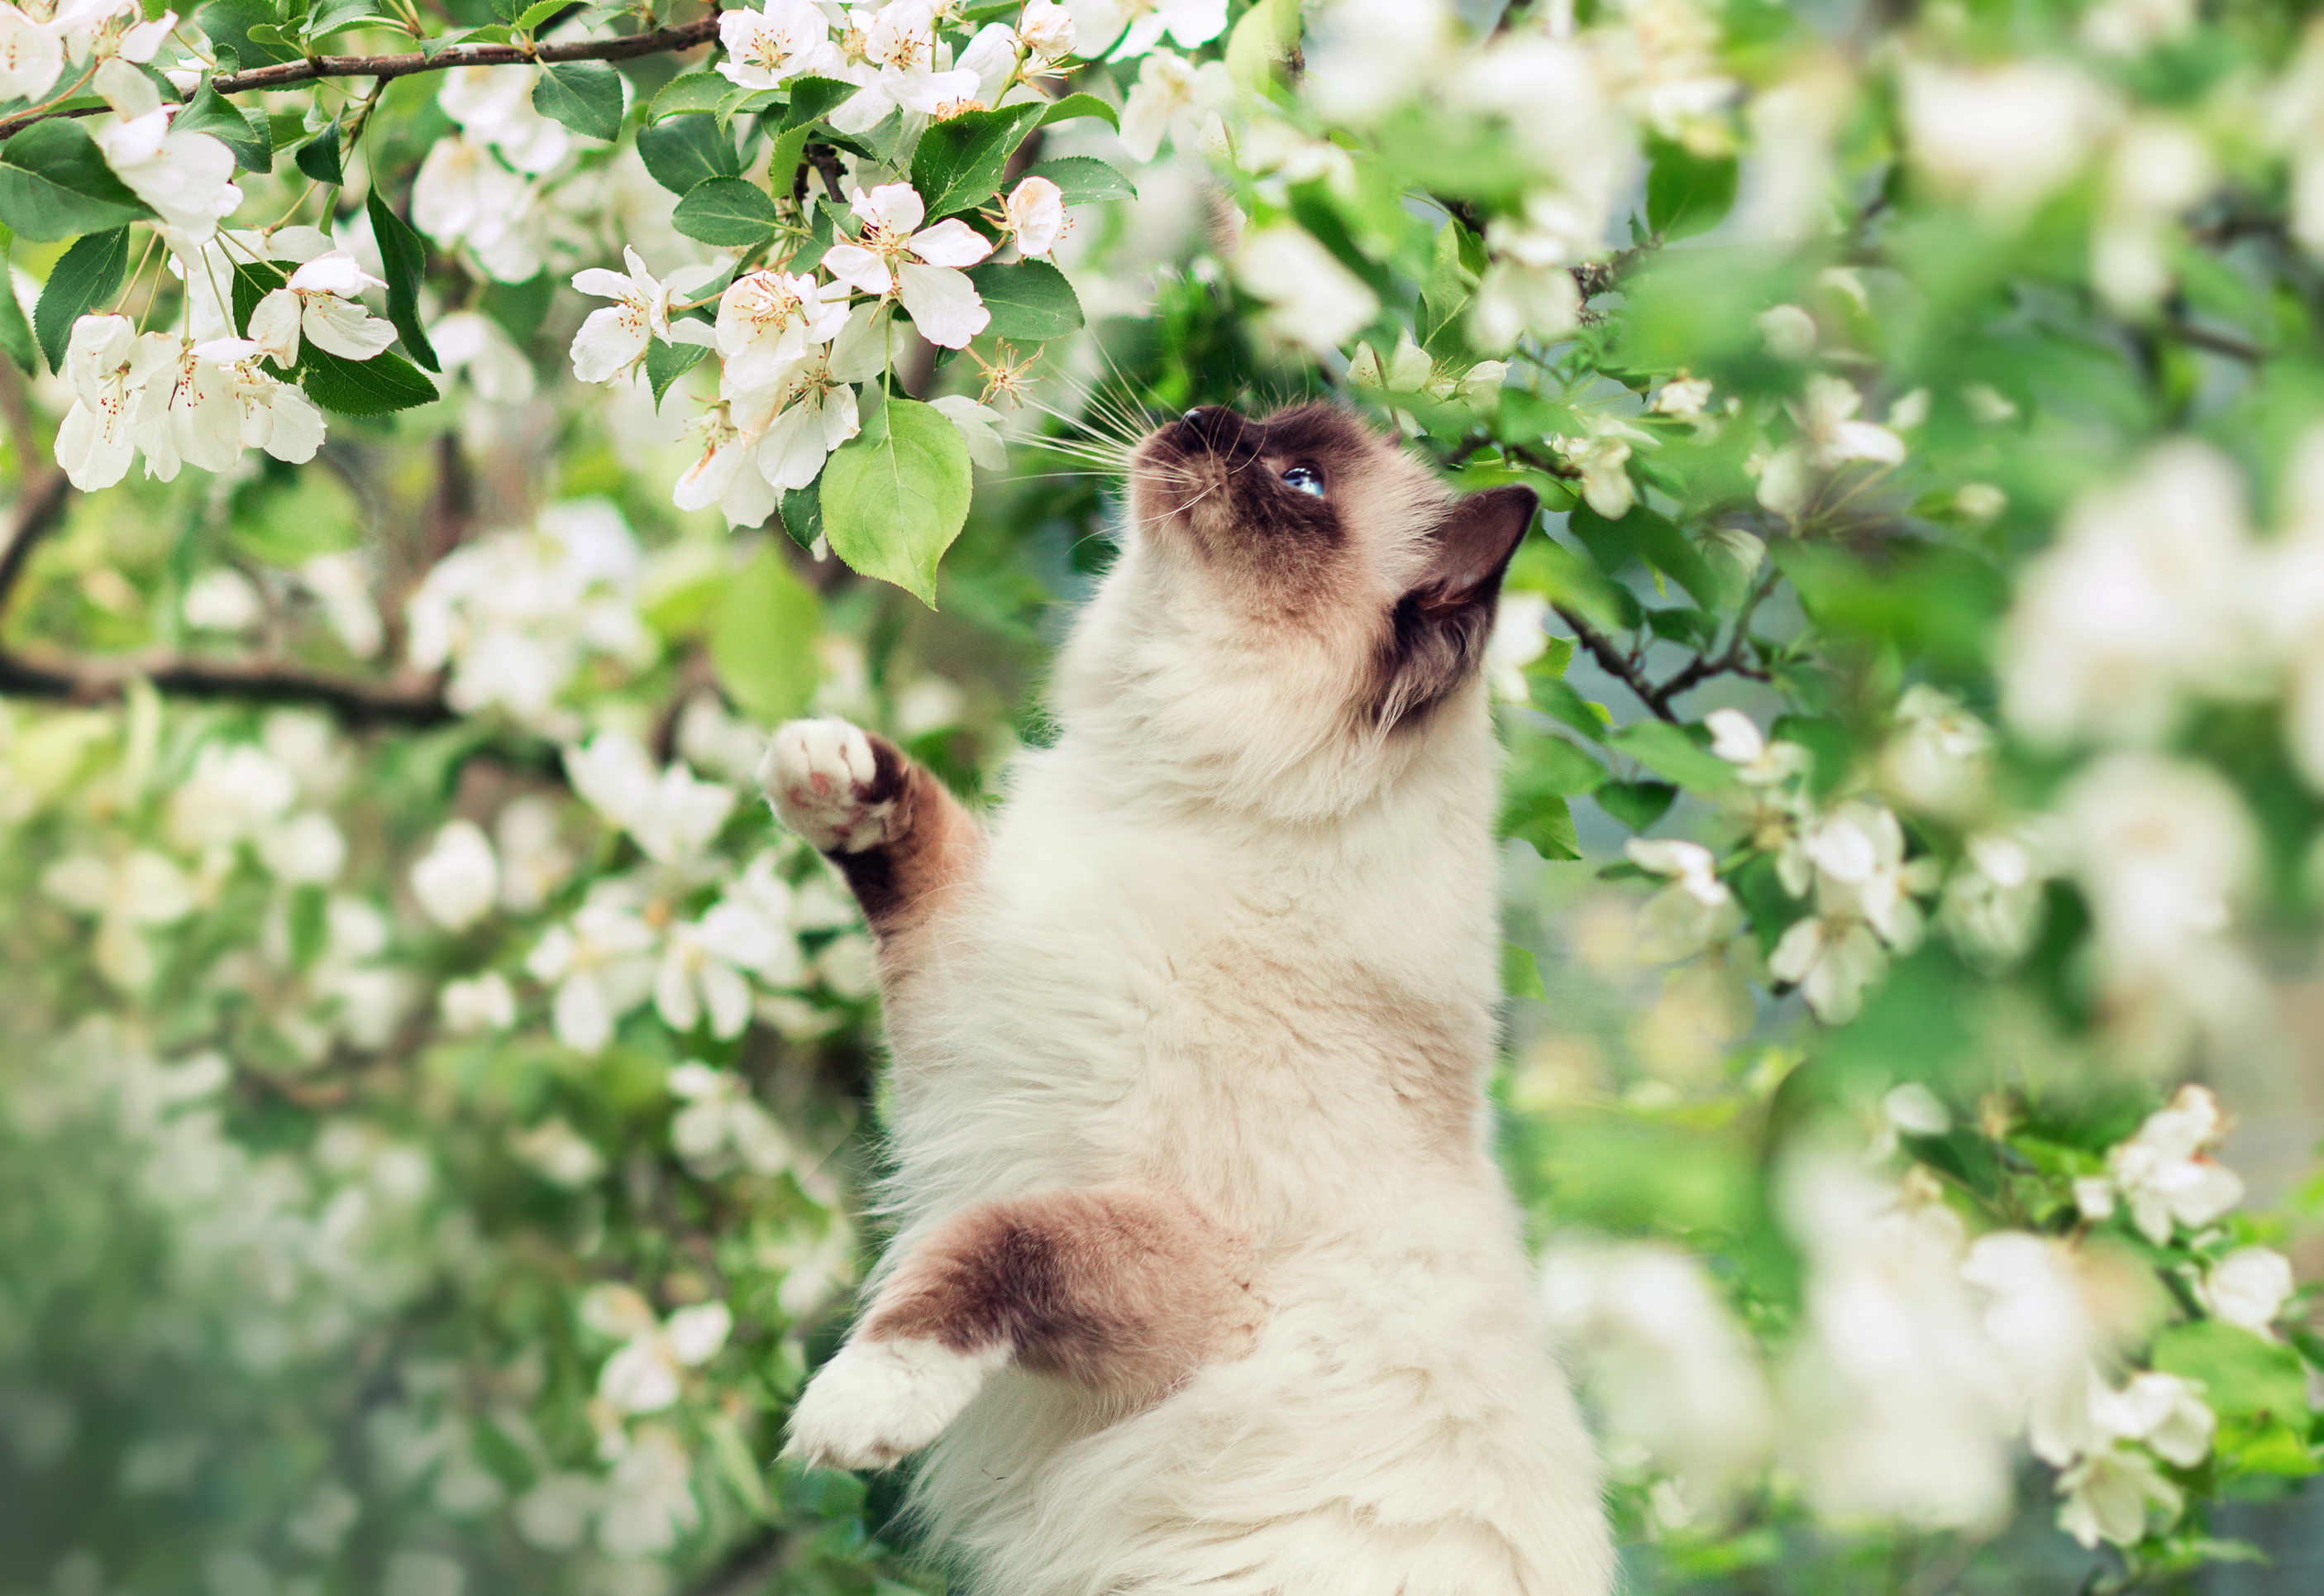 Завантажити шпалери Гімалайська Кішка на телефон безкоштовно